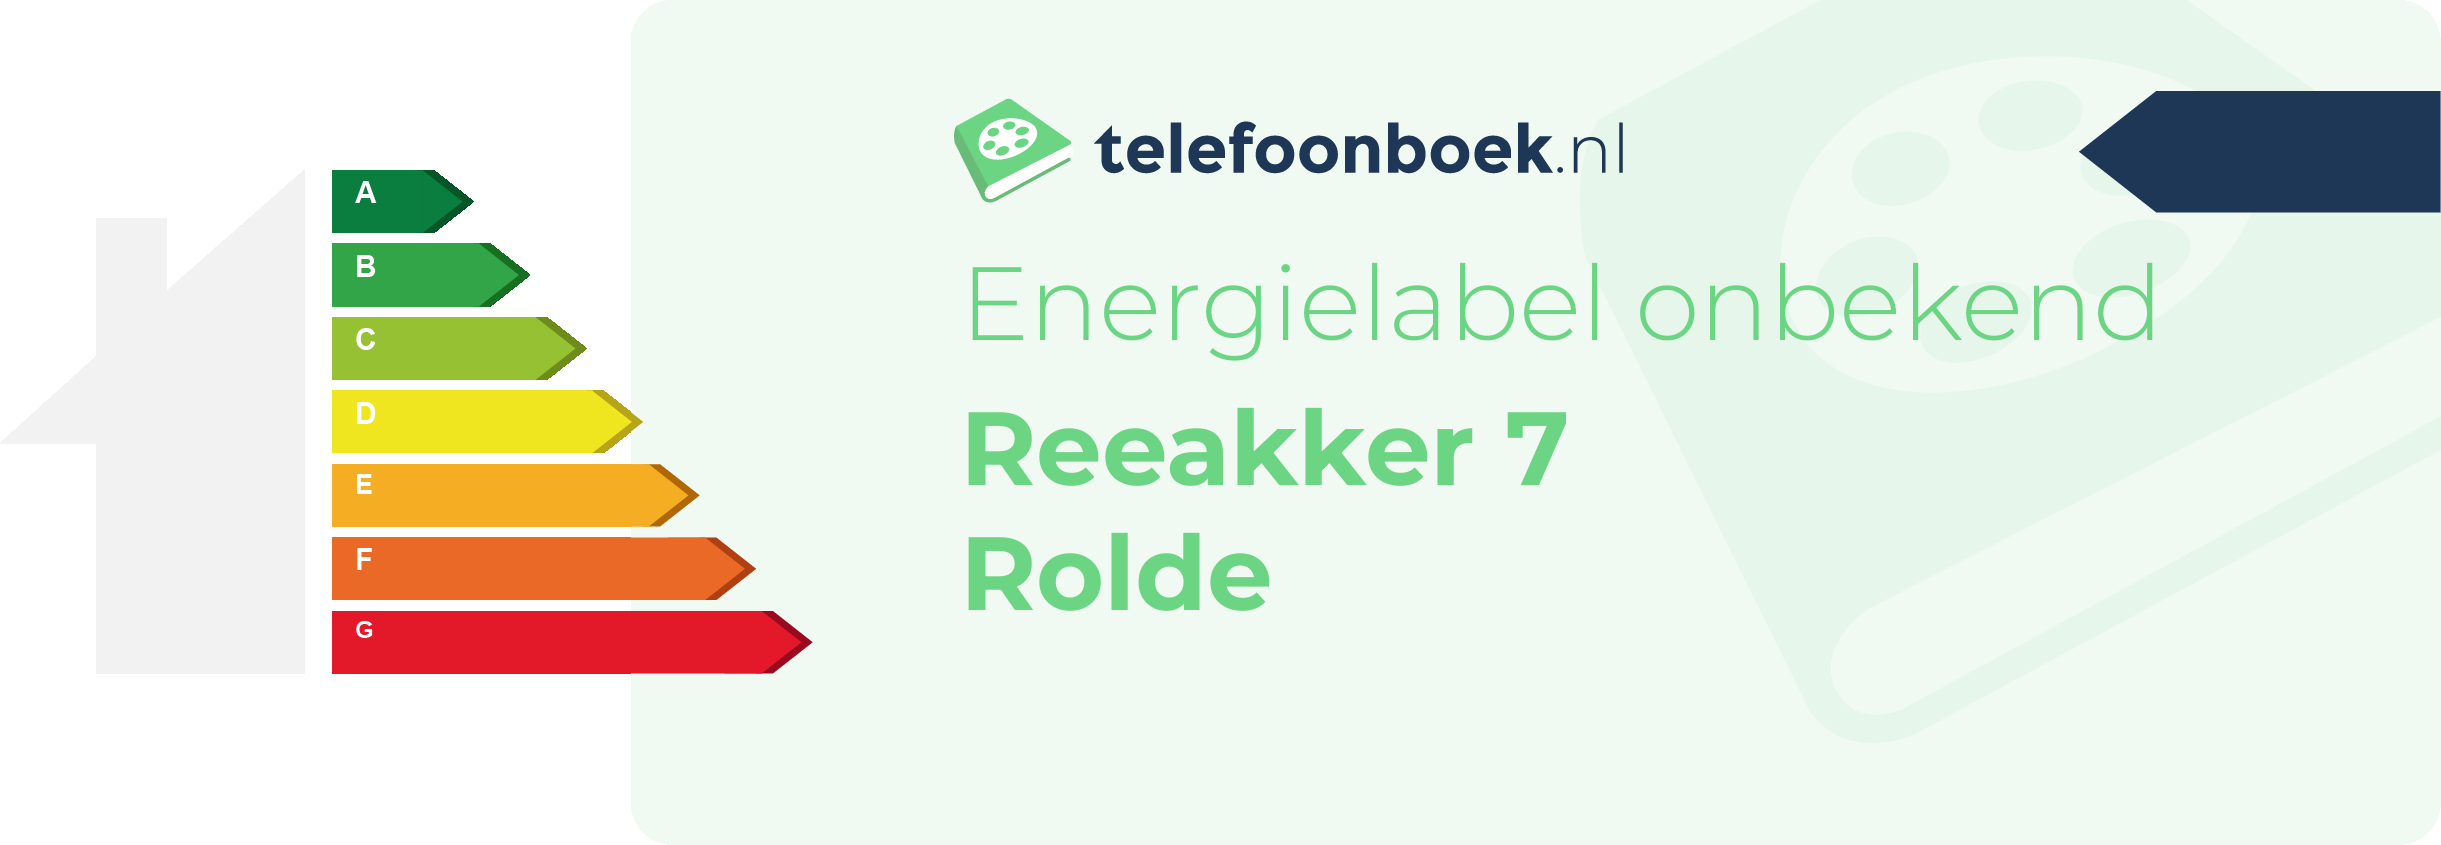 Energielabel Reeakker 7 Rolde